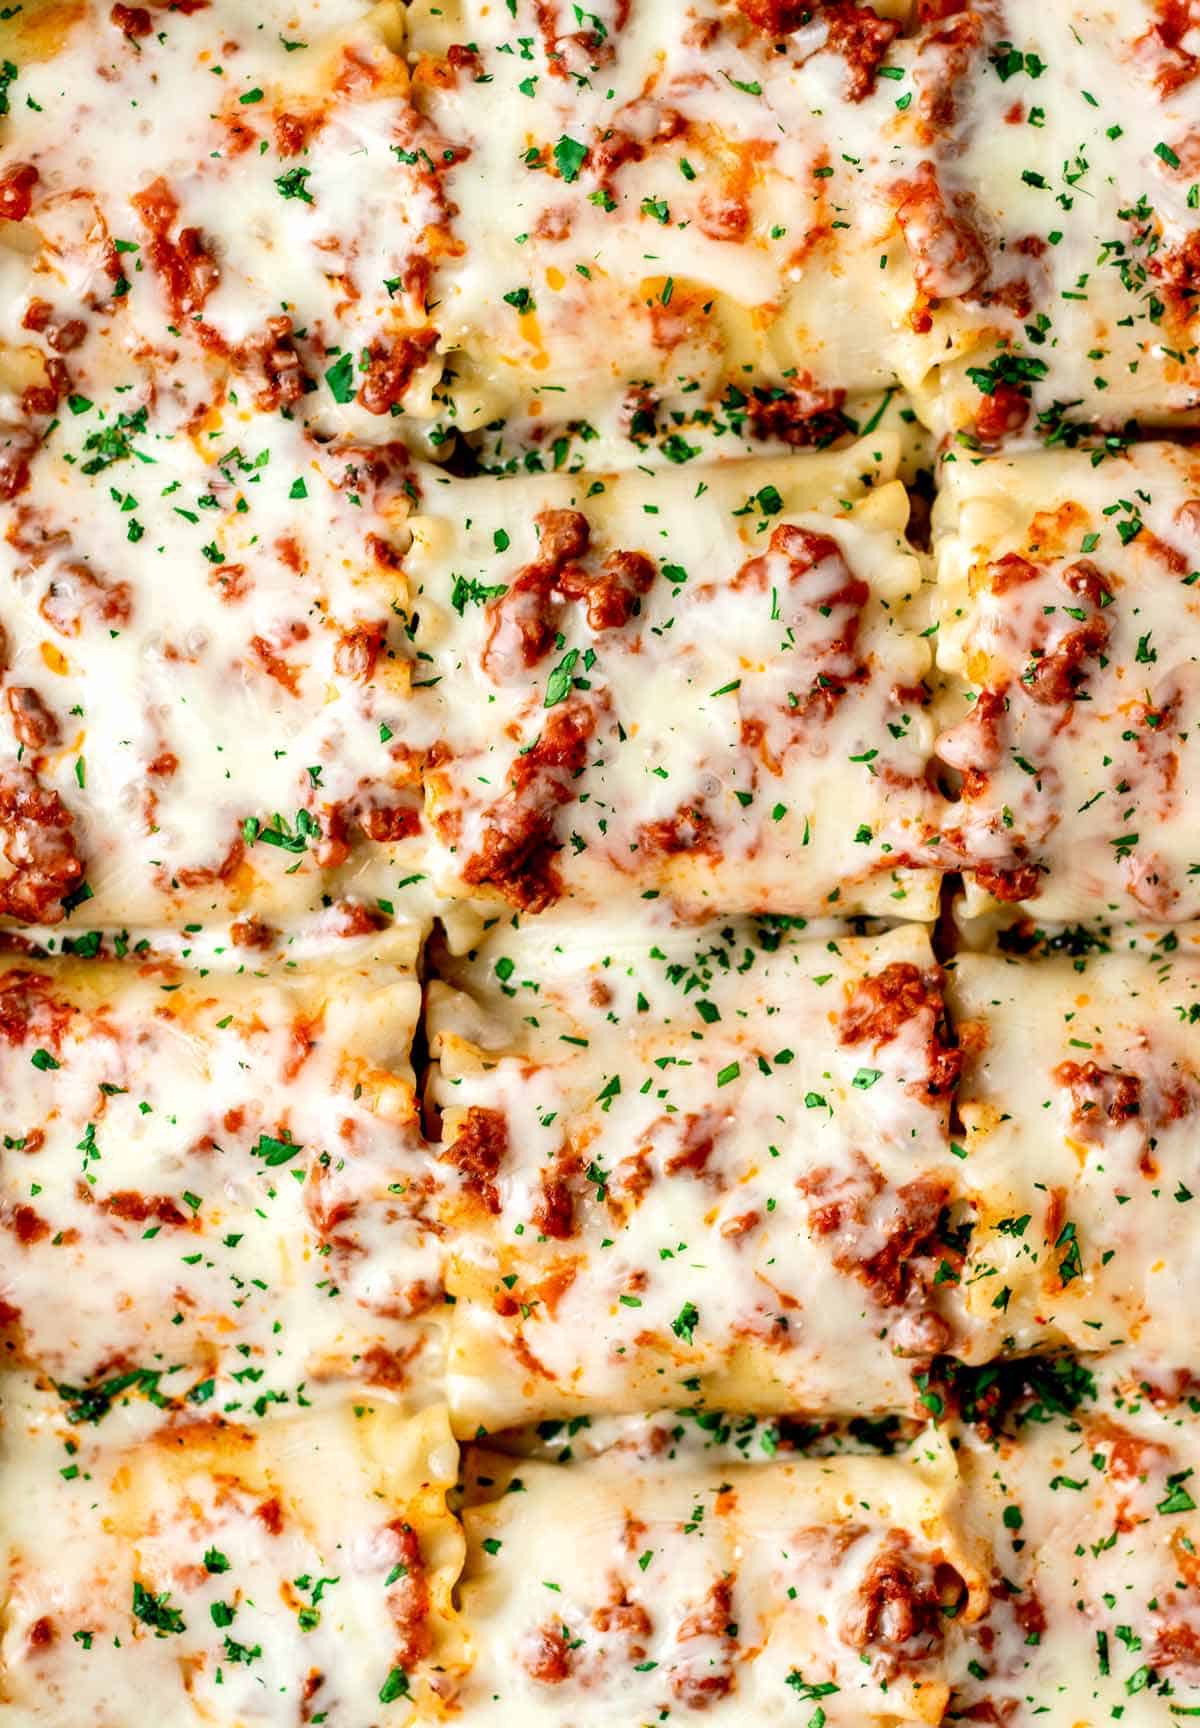 Hidden veggie lasagna roll ups after baking.